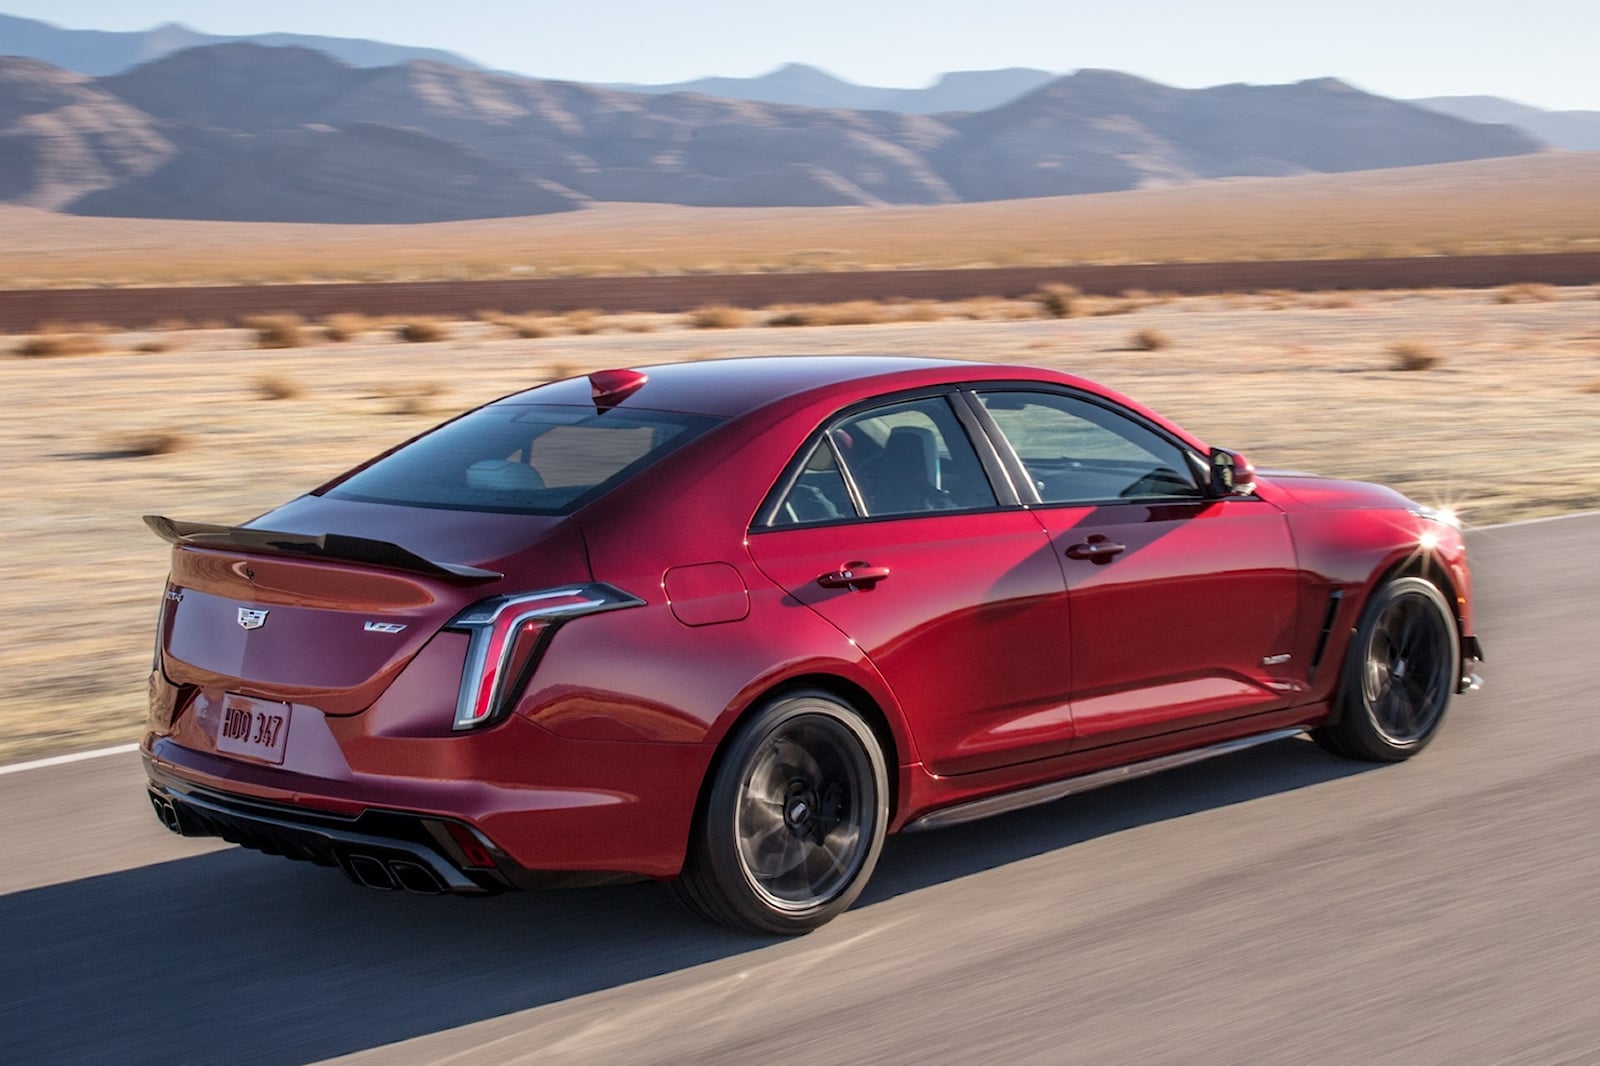 Перед вами гоночный автомобиль Cadillac следующего поколения, прототип LMDh-VR. Мы ожидаем полного представления в ближайшее время. Конечная цель Cadillac — побороться за общую победу в гонке «24 часа Ле-Мана».